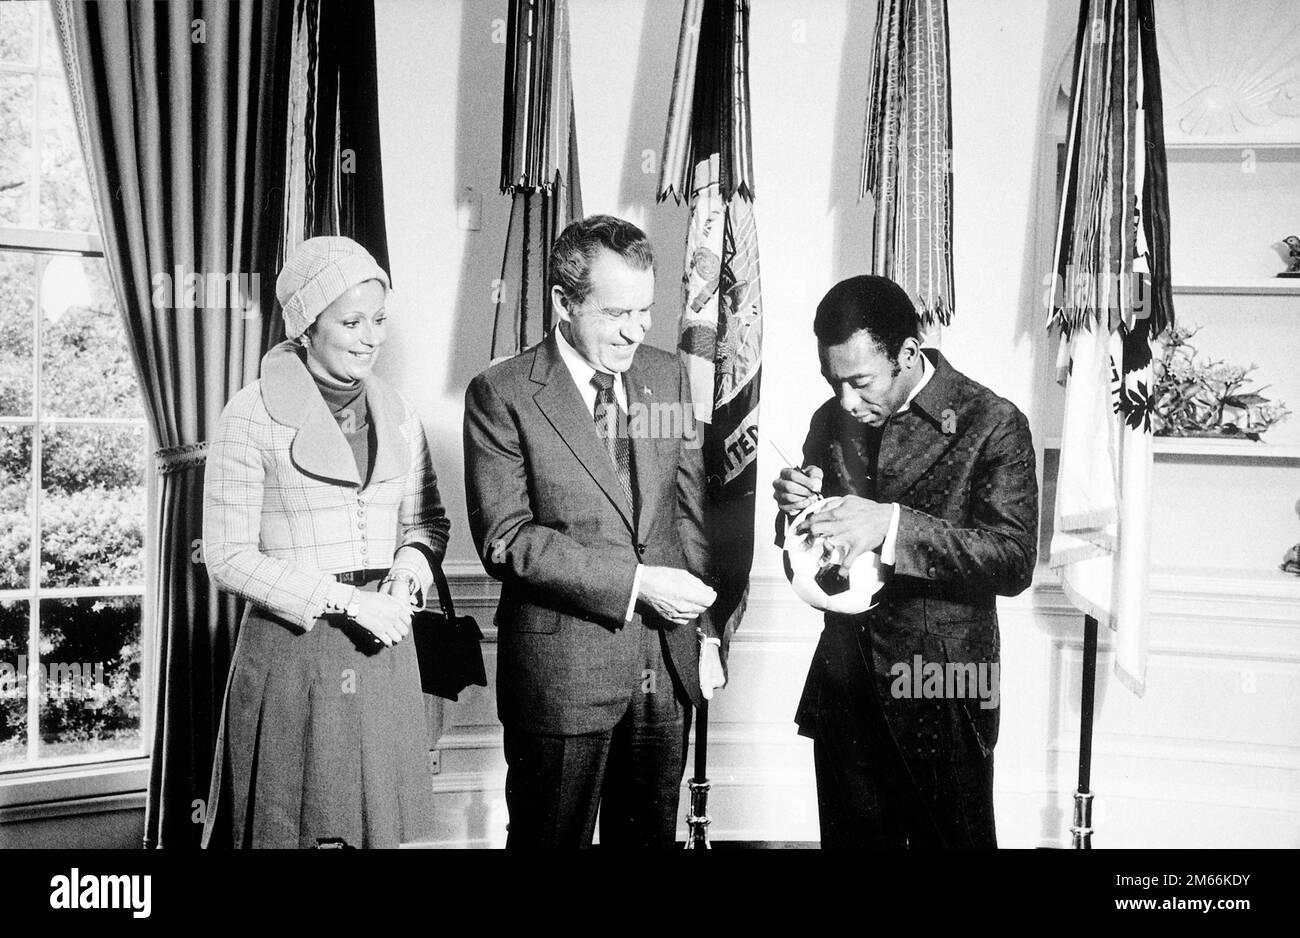 Il presidente Nixon incontra Edson 'Pele' Arantes do Nacimento, ex giocatore di calcio brasiliano e direttore del programma internazionale di calcio sponsorizzato da PepsiCo. 'Pele' autografa una palla di calcio per il presidente Nixon, 1973 Foto Stock